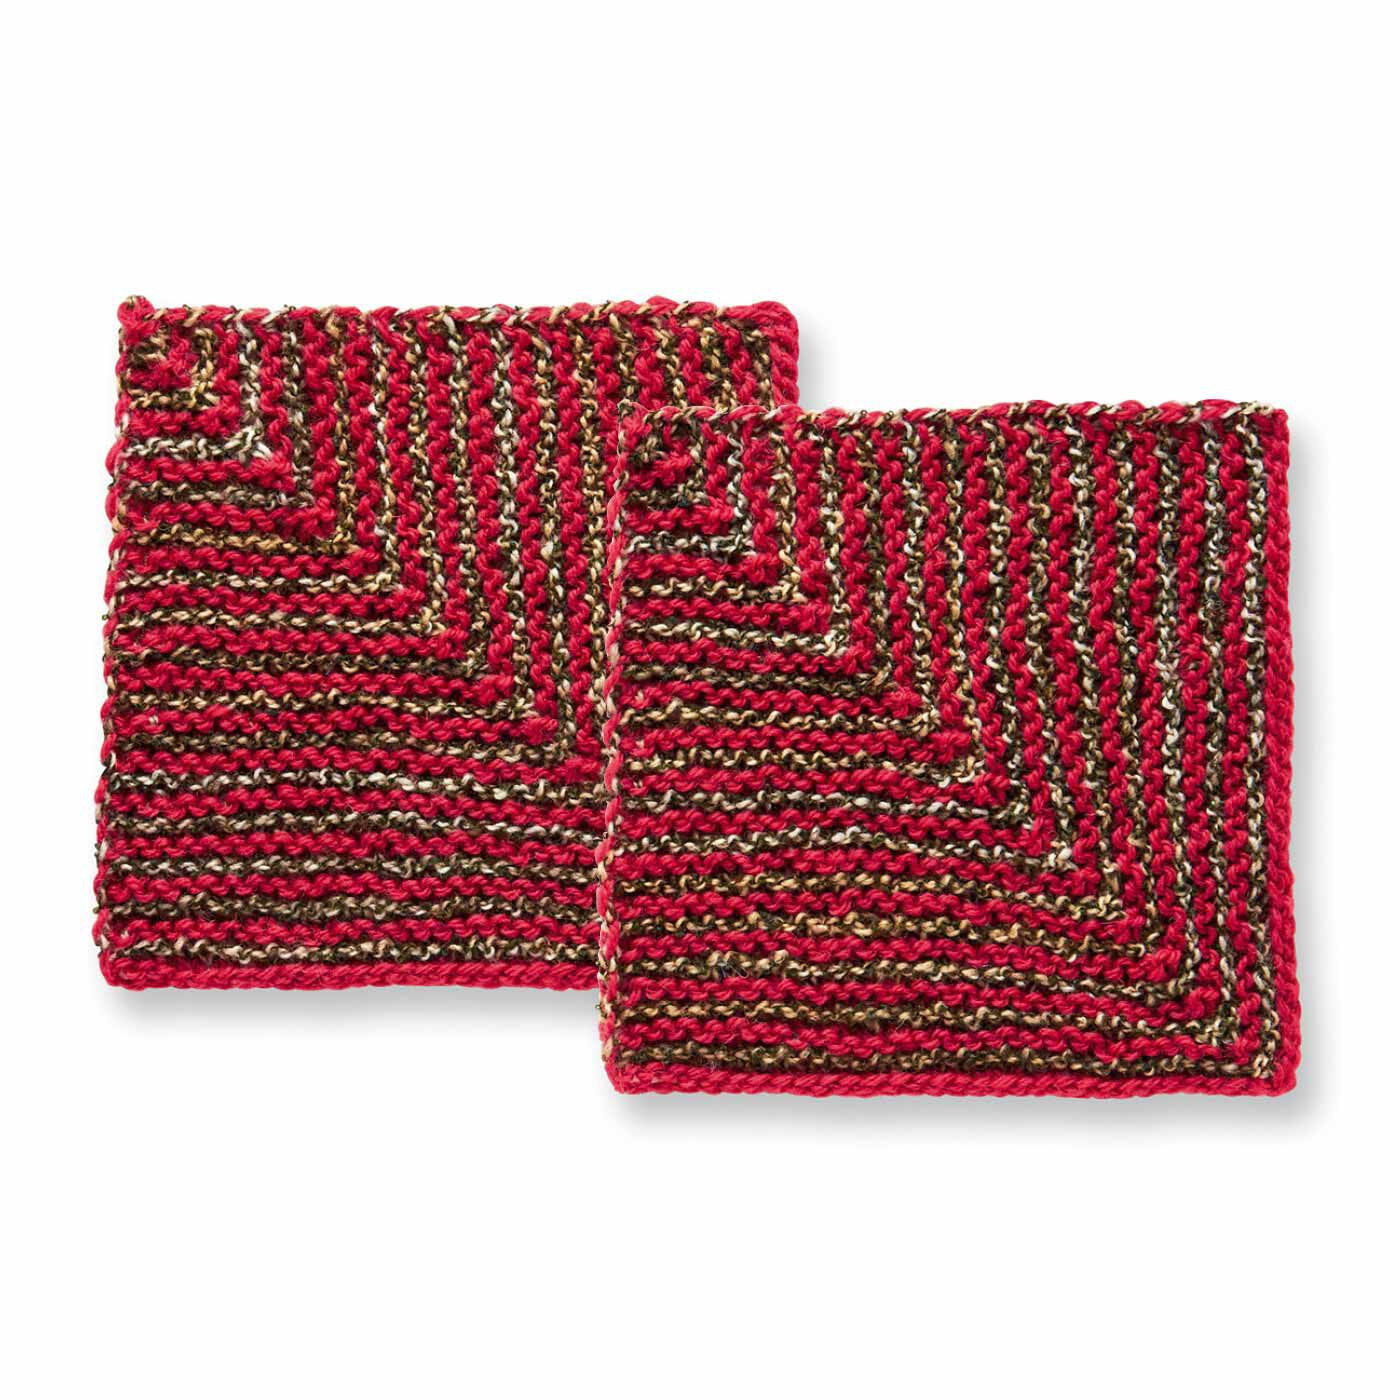 Couturier|棒針編みの沼にはまる ユニーク編み地のサンプラーの会|どんどん減るドミノ編み